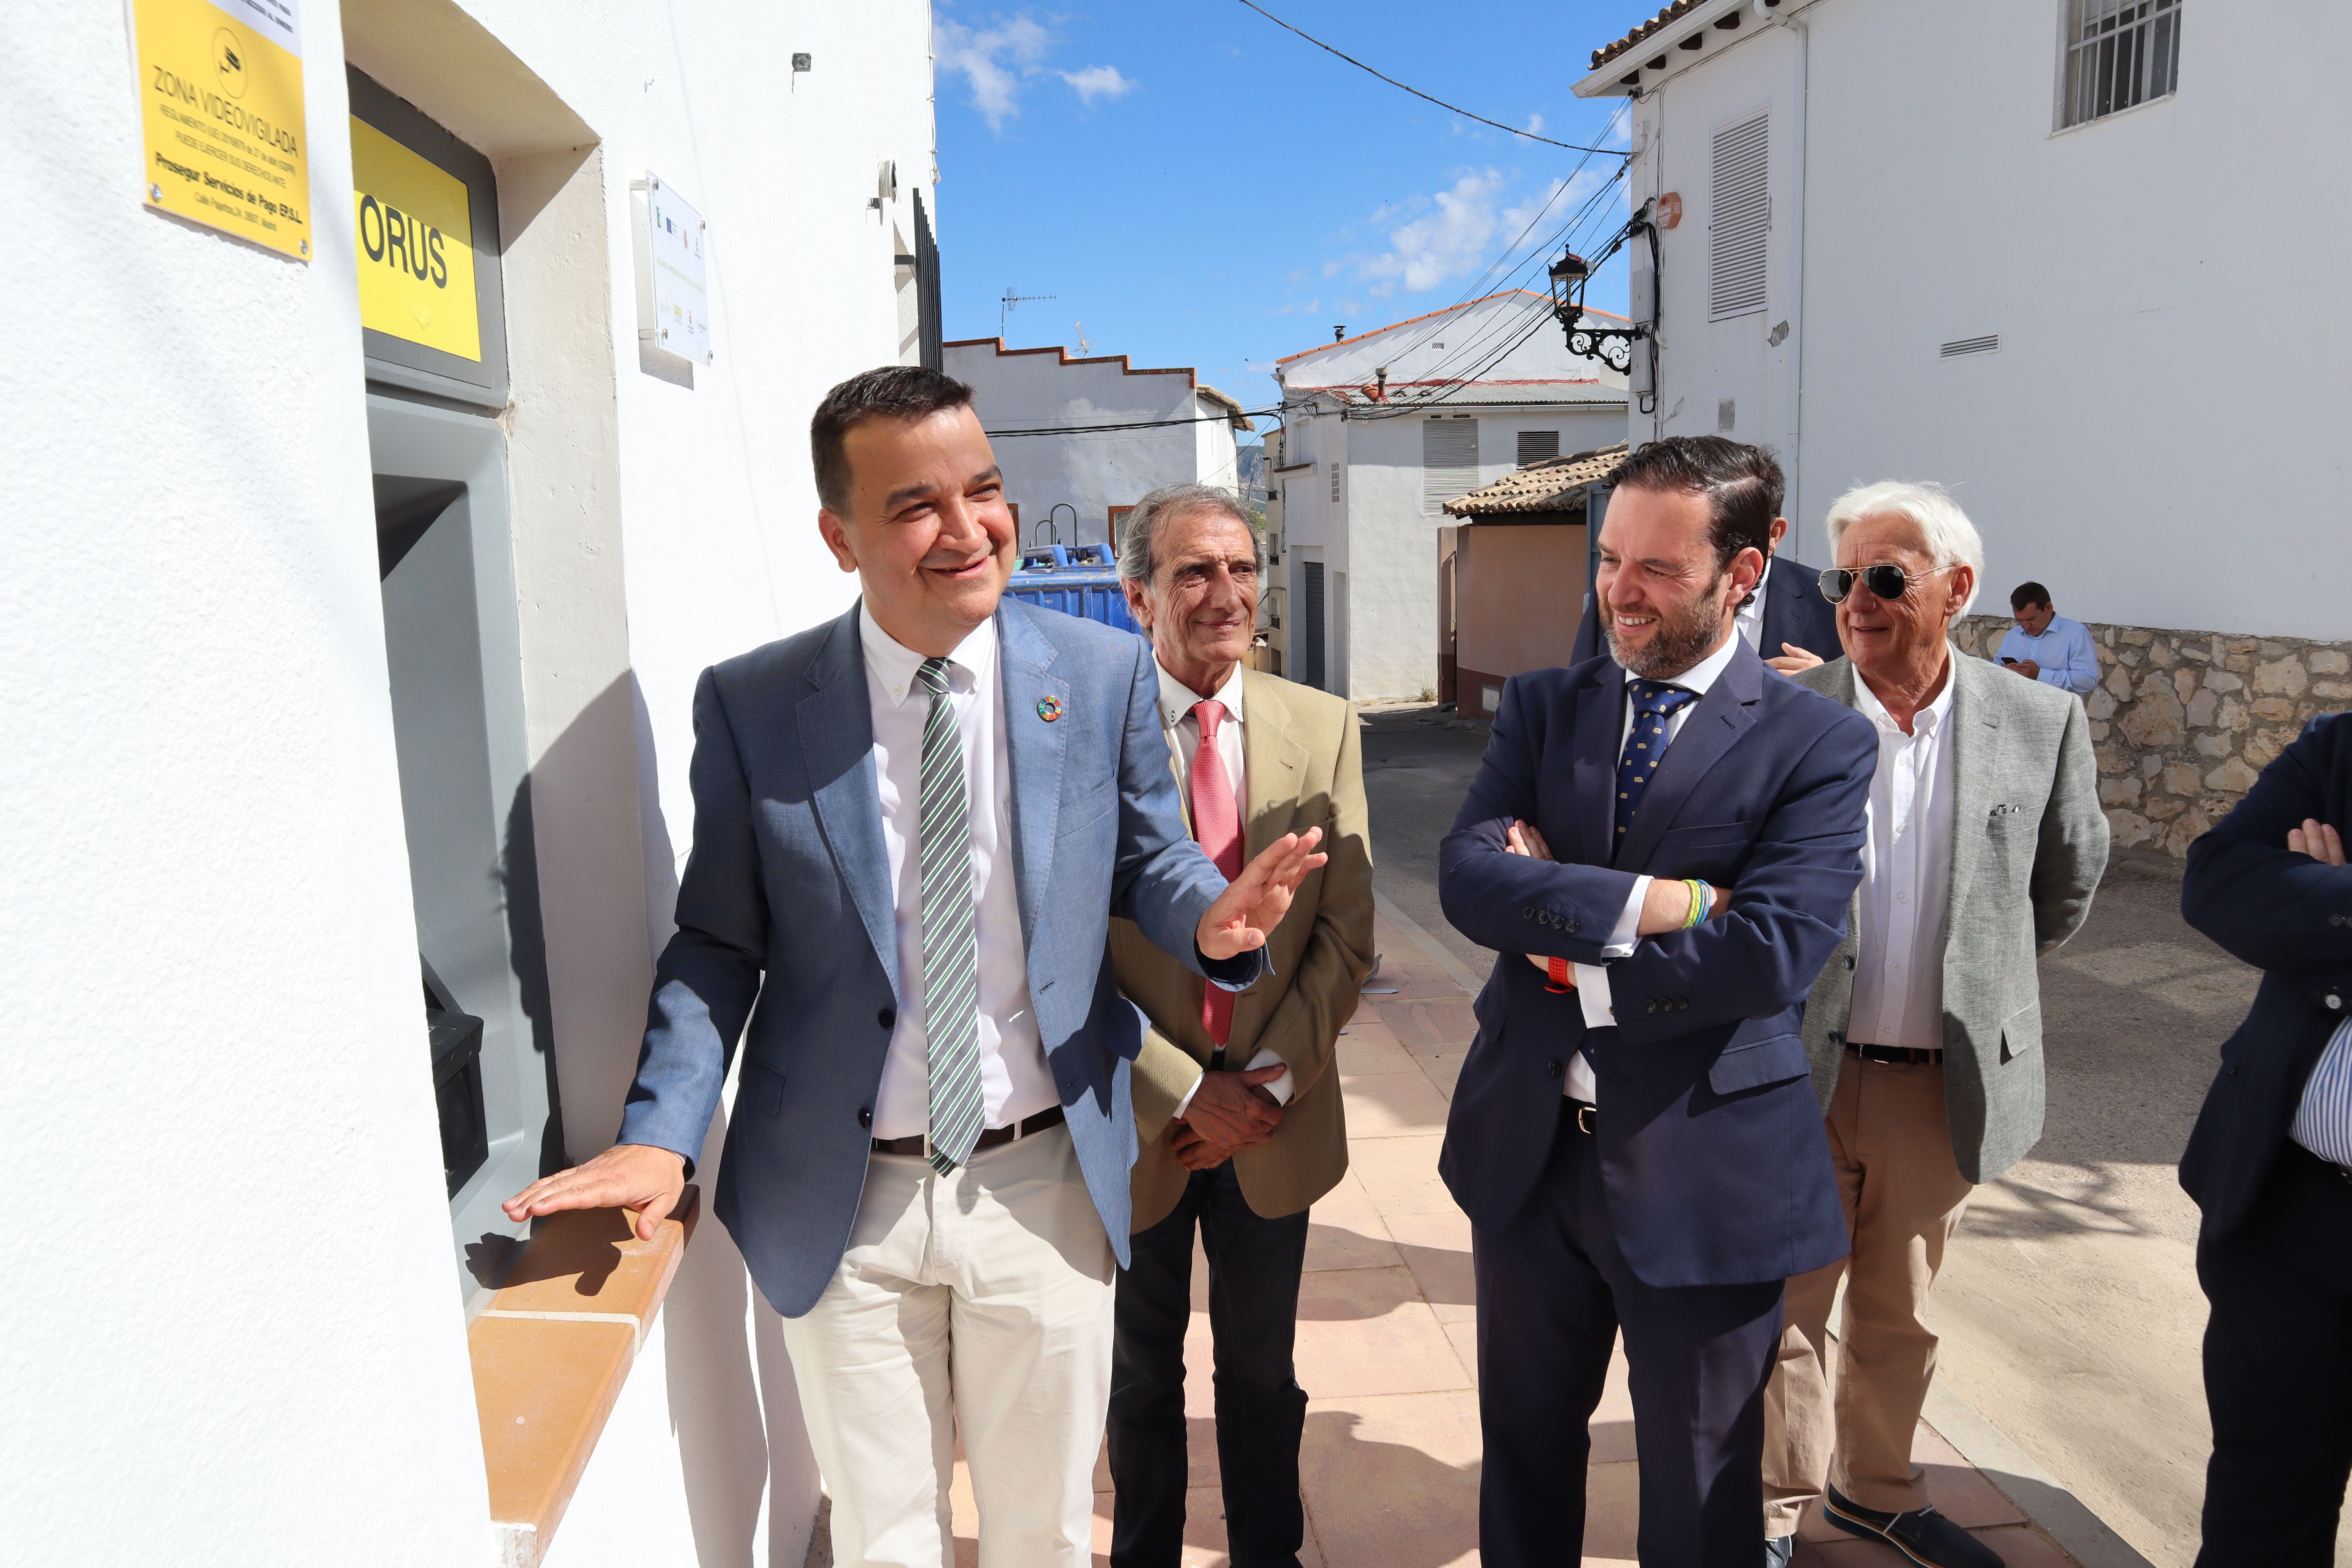 Lucha contra la exclusión financiera: instalan el primer cajero en zona rural de Castilla-La Mancha